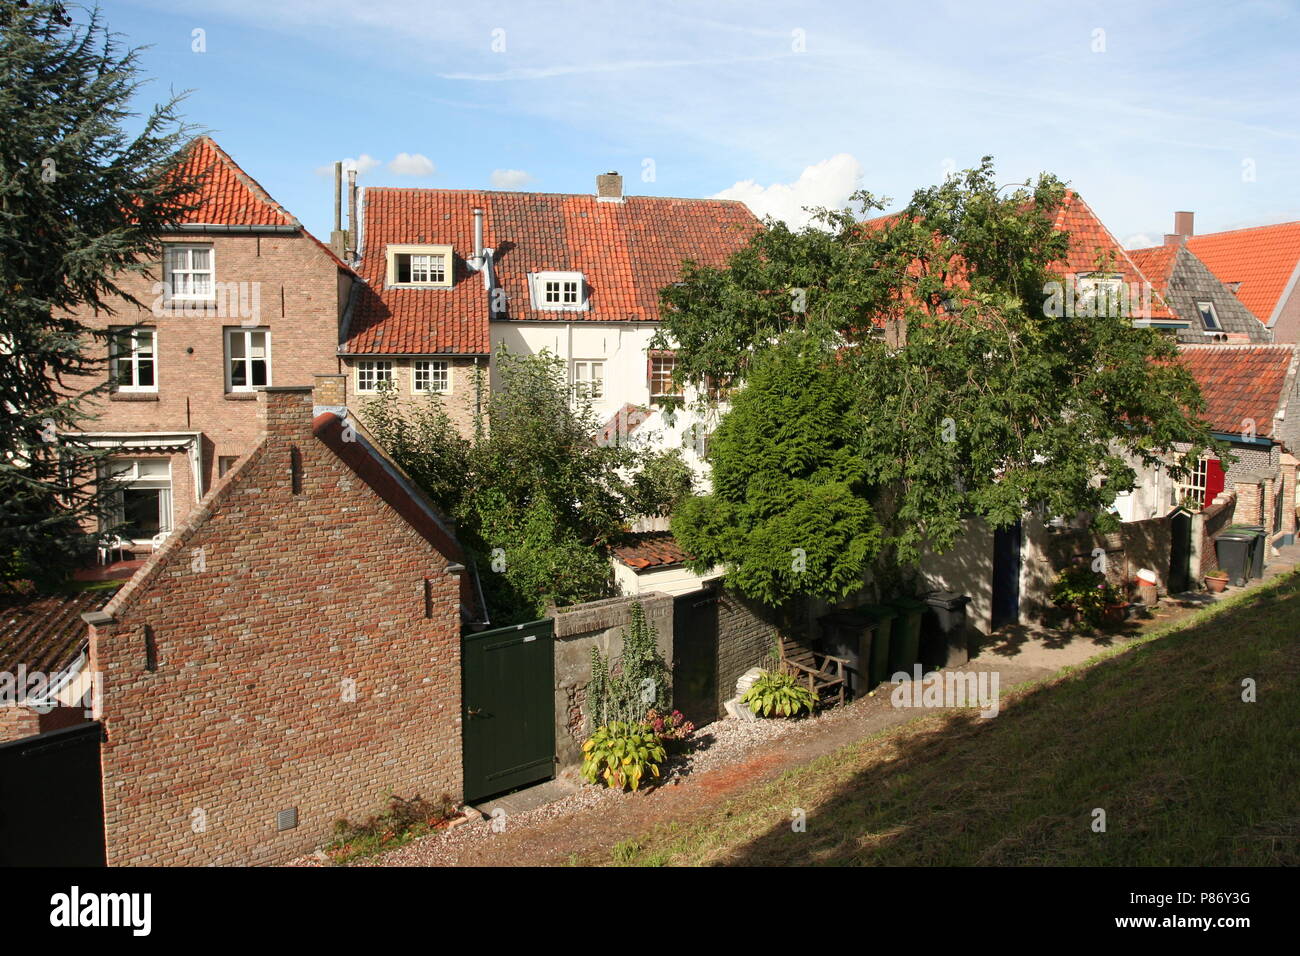 Het dorp Oud-Heusden; The village of Oud-Heusden Stock Photo